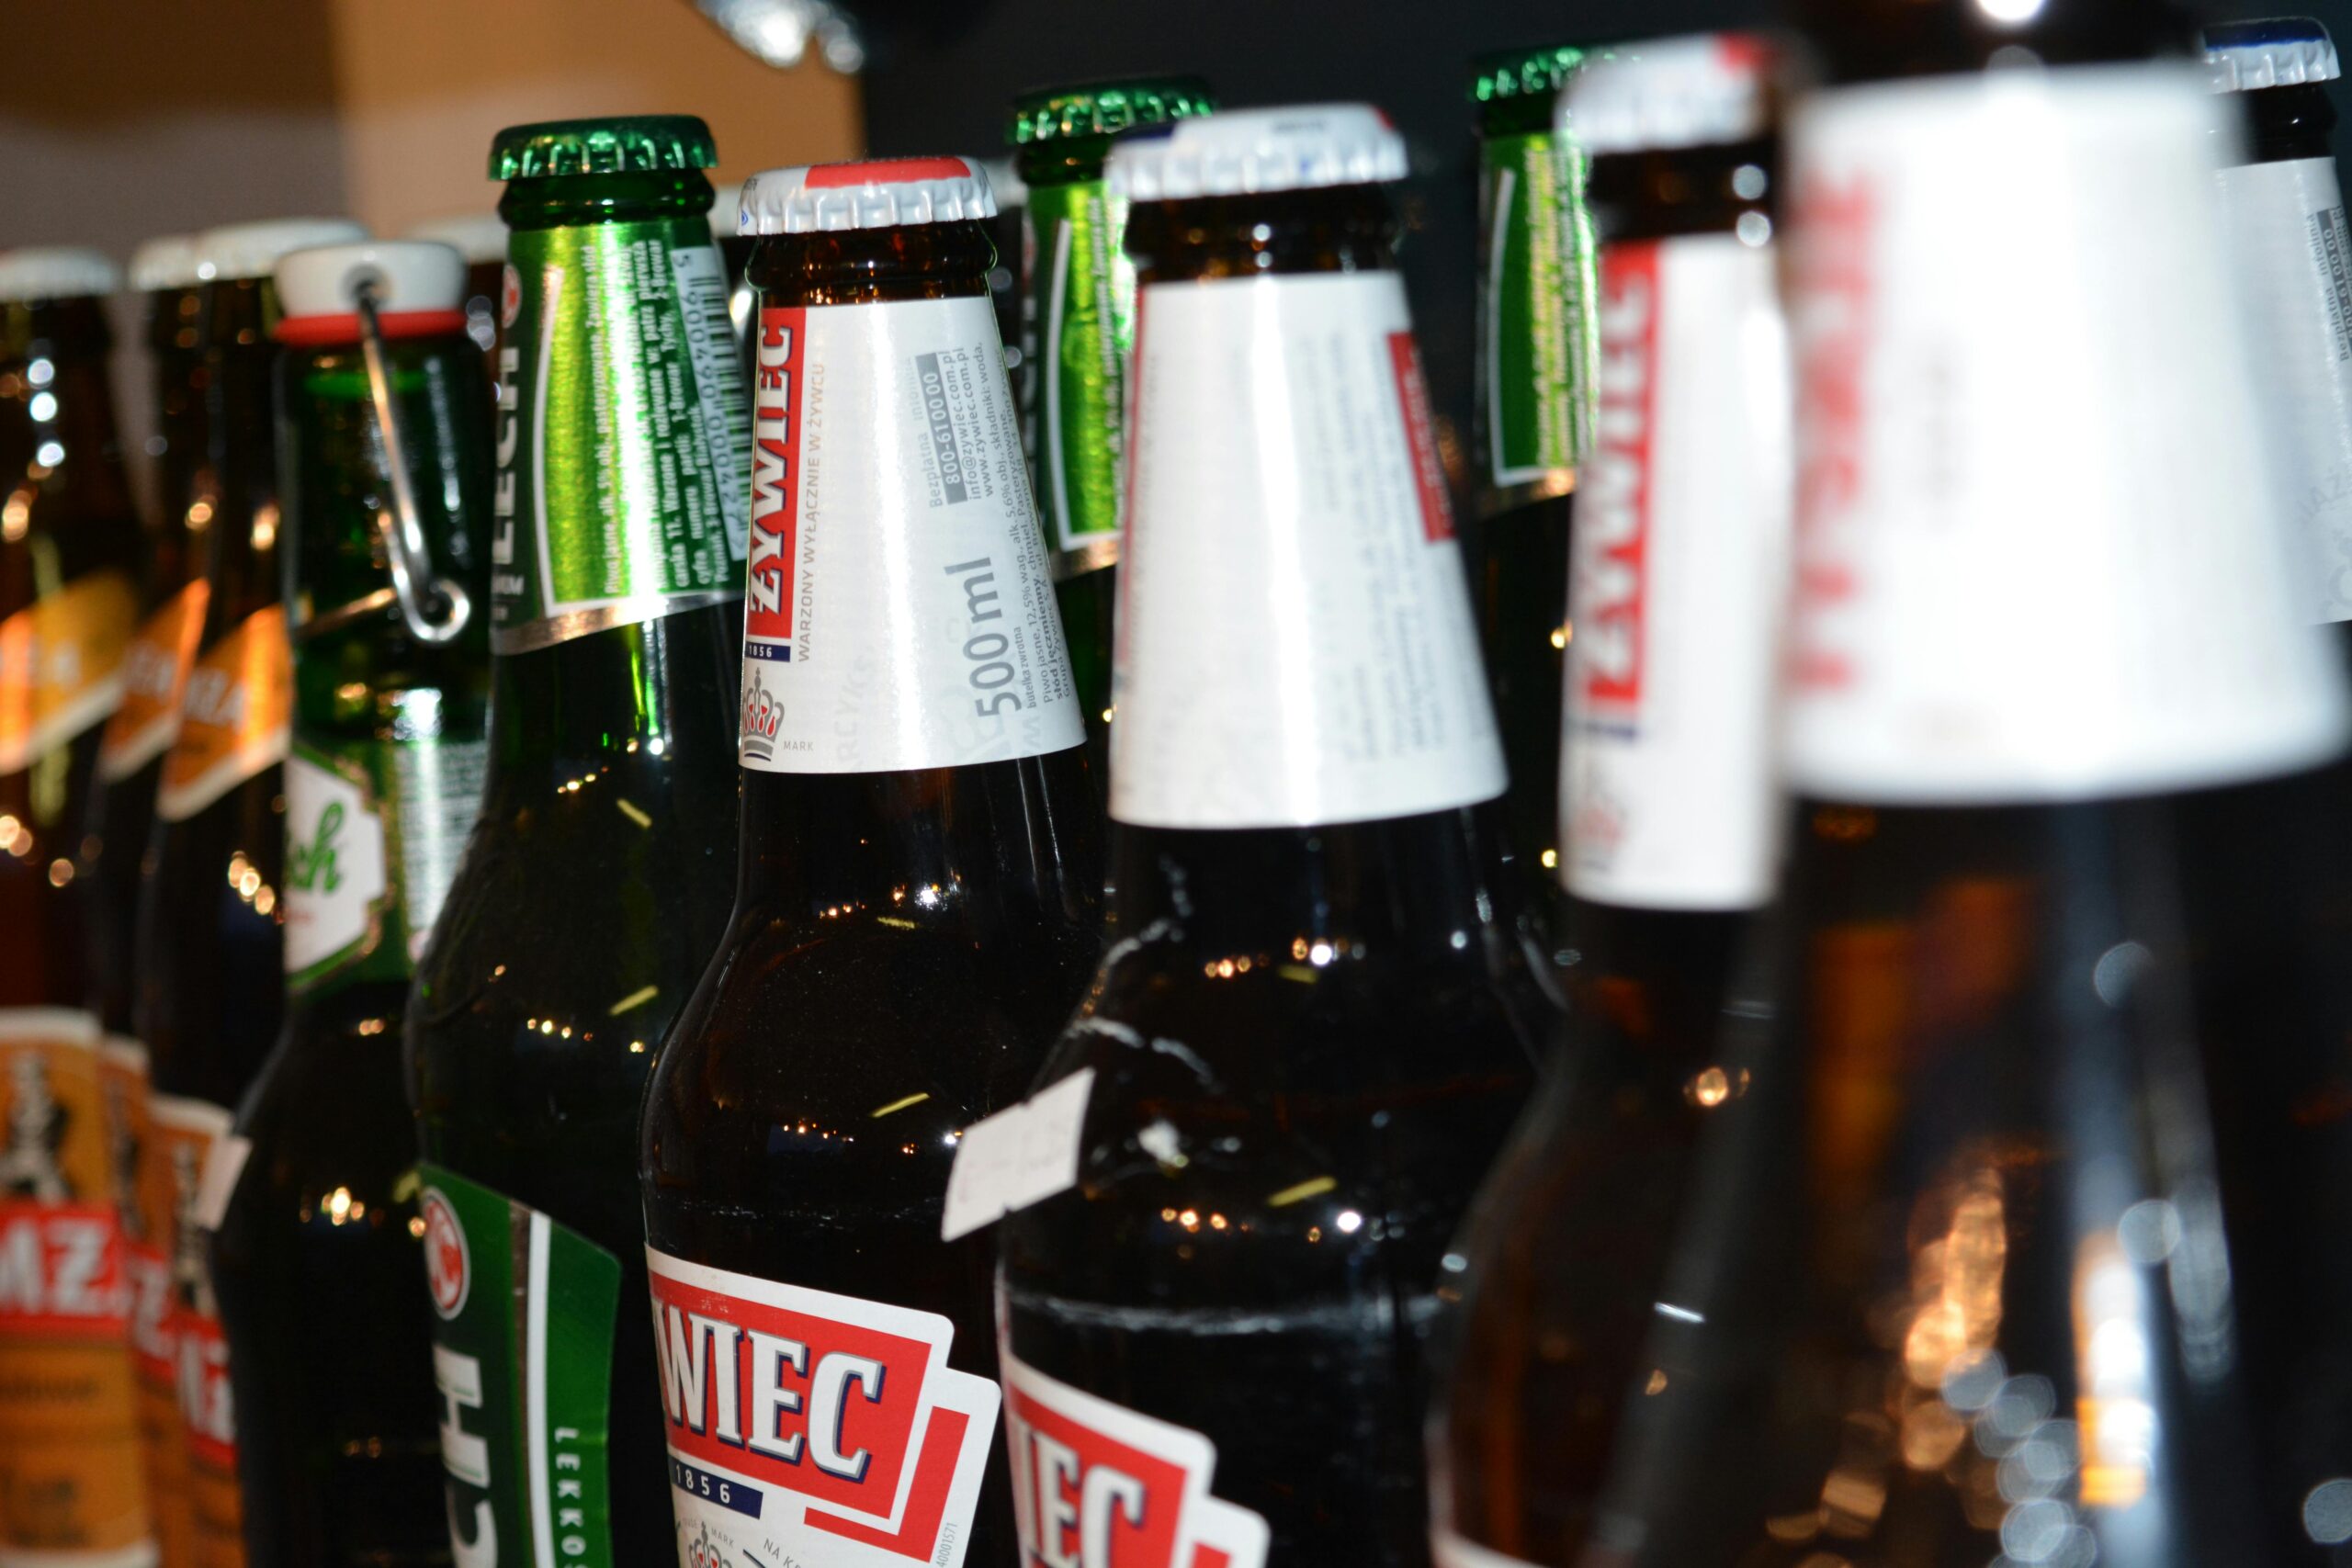 Alberta evalúa expandir la venta de alcohol a supermercados y tiendas de conveniencia